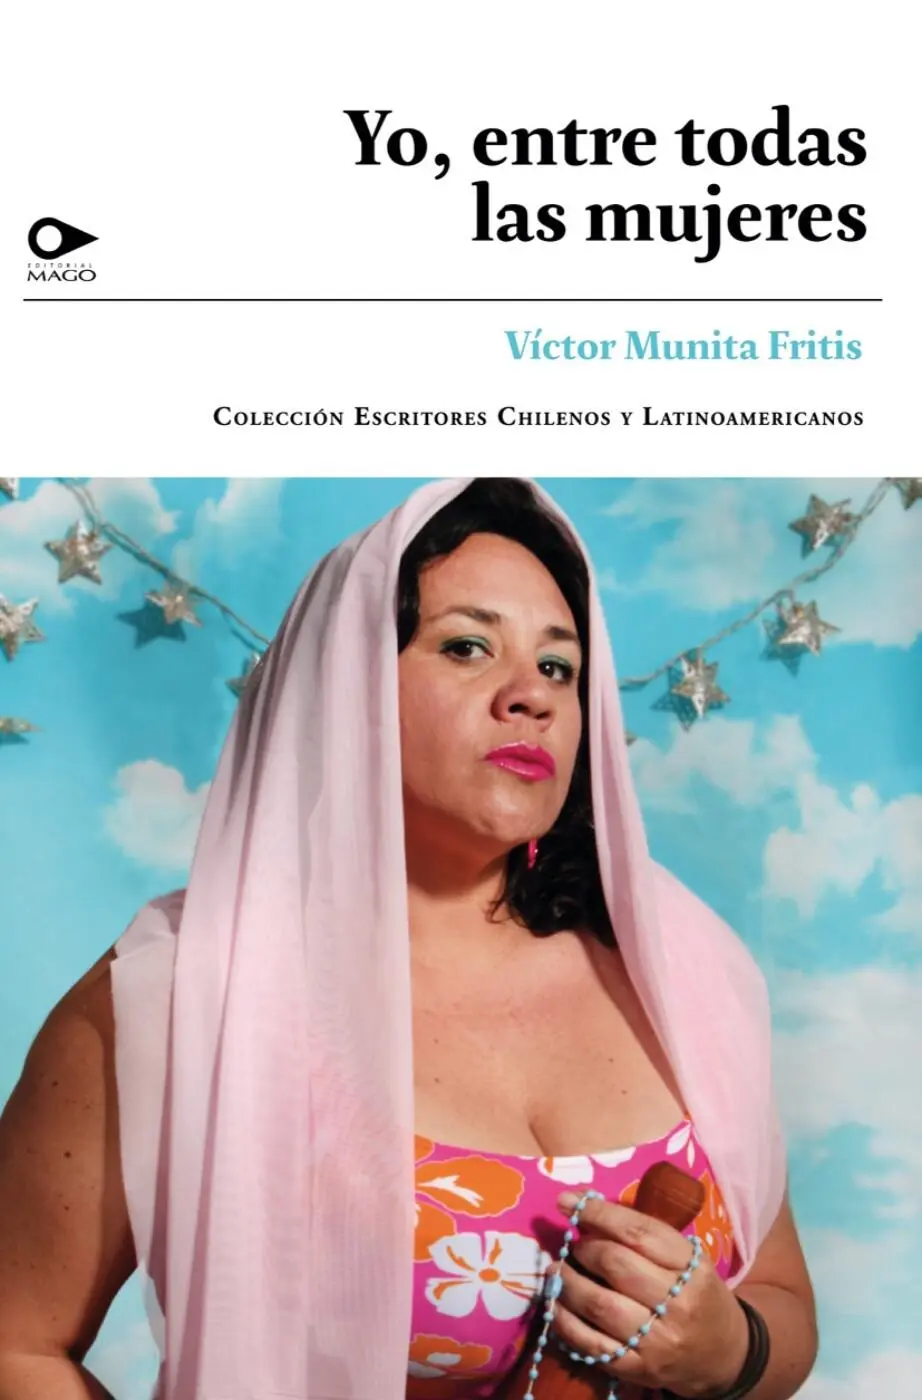 Copyright 2020 by Víctor Munita Fritis Yo entre todas las mujeres 2020 - фото 1